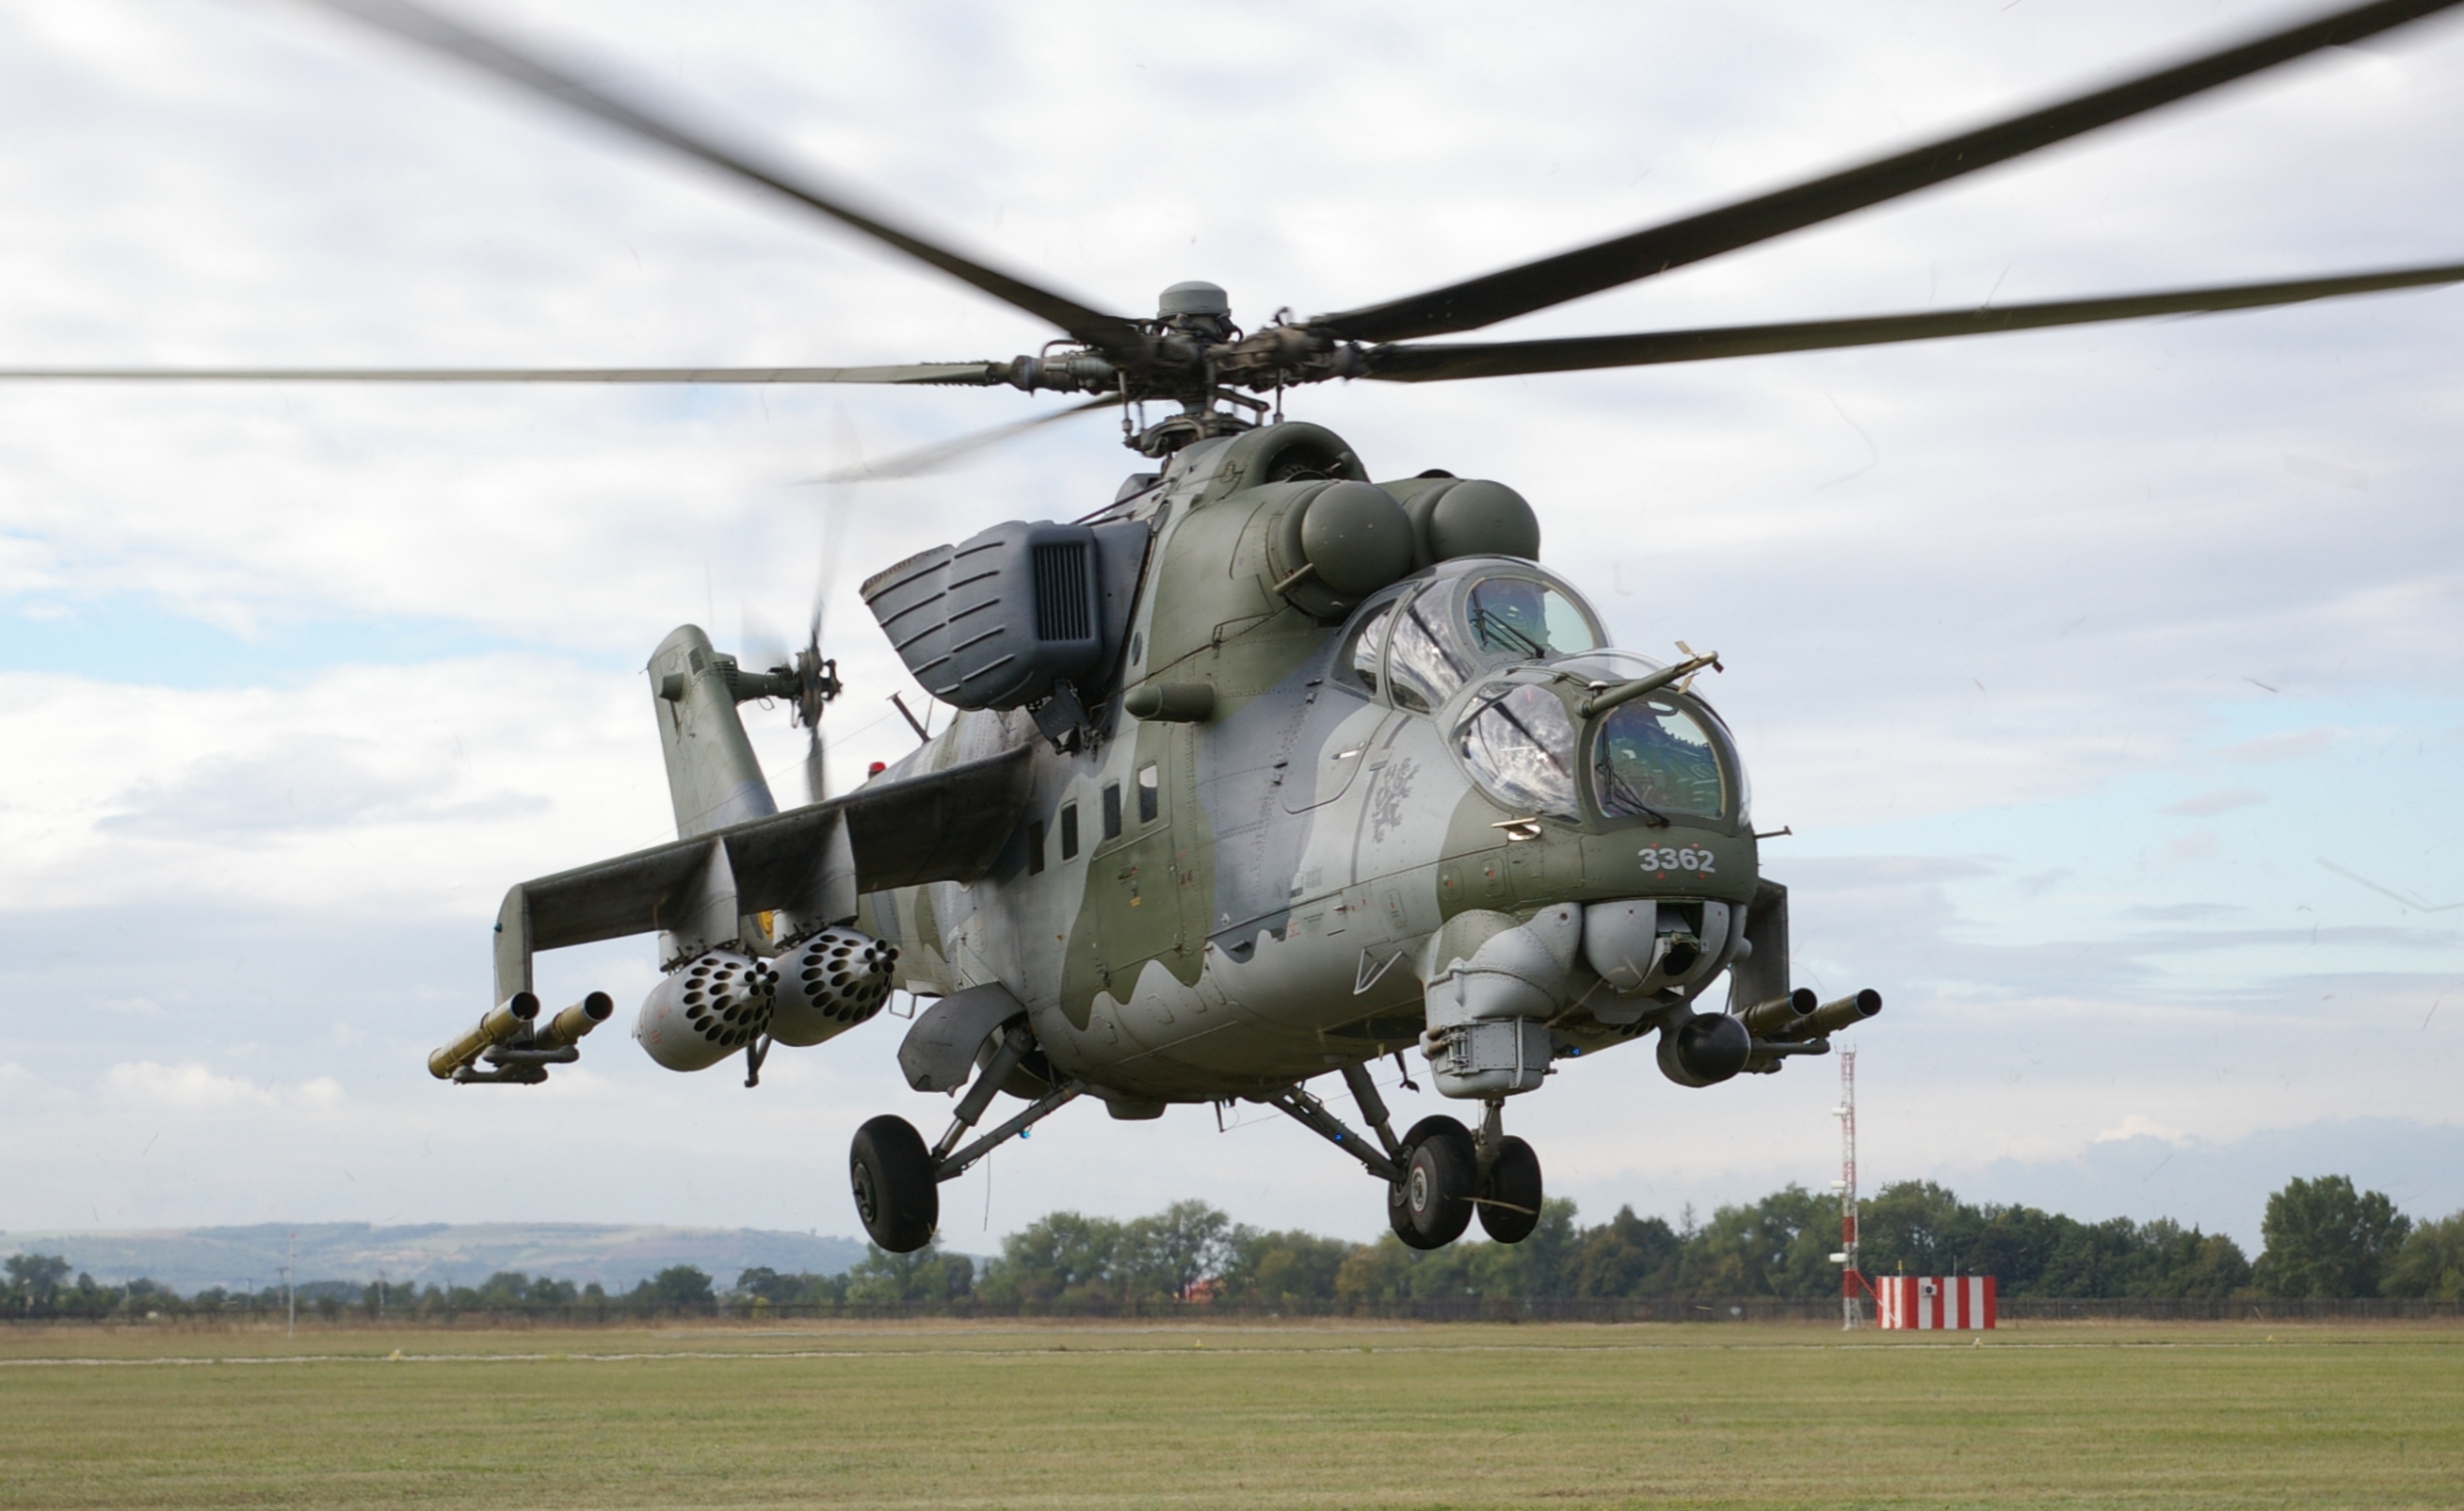 Mi-24 được coi là một trong những huyền thoại của các dòng trực thăng chiến đấu trên thế giới. Hiện Mi-24 vẫn vẫn được sử dụng phổ biến ở hơn 30 quốc gia trên thế giới.